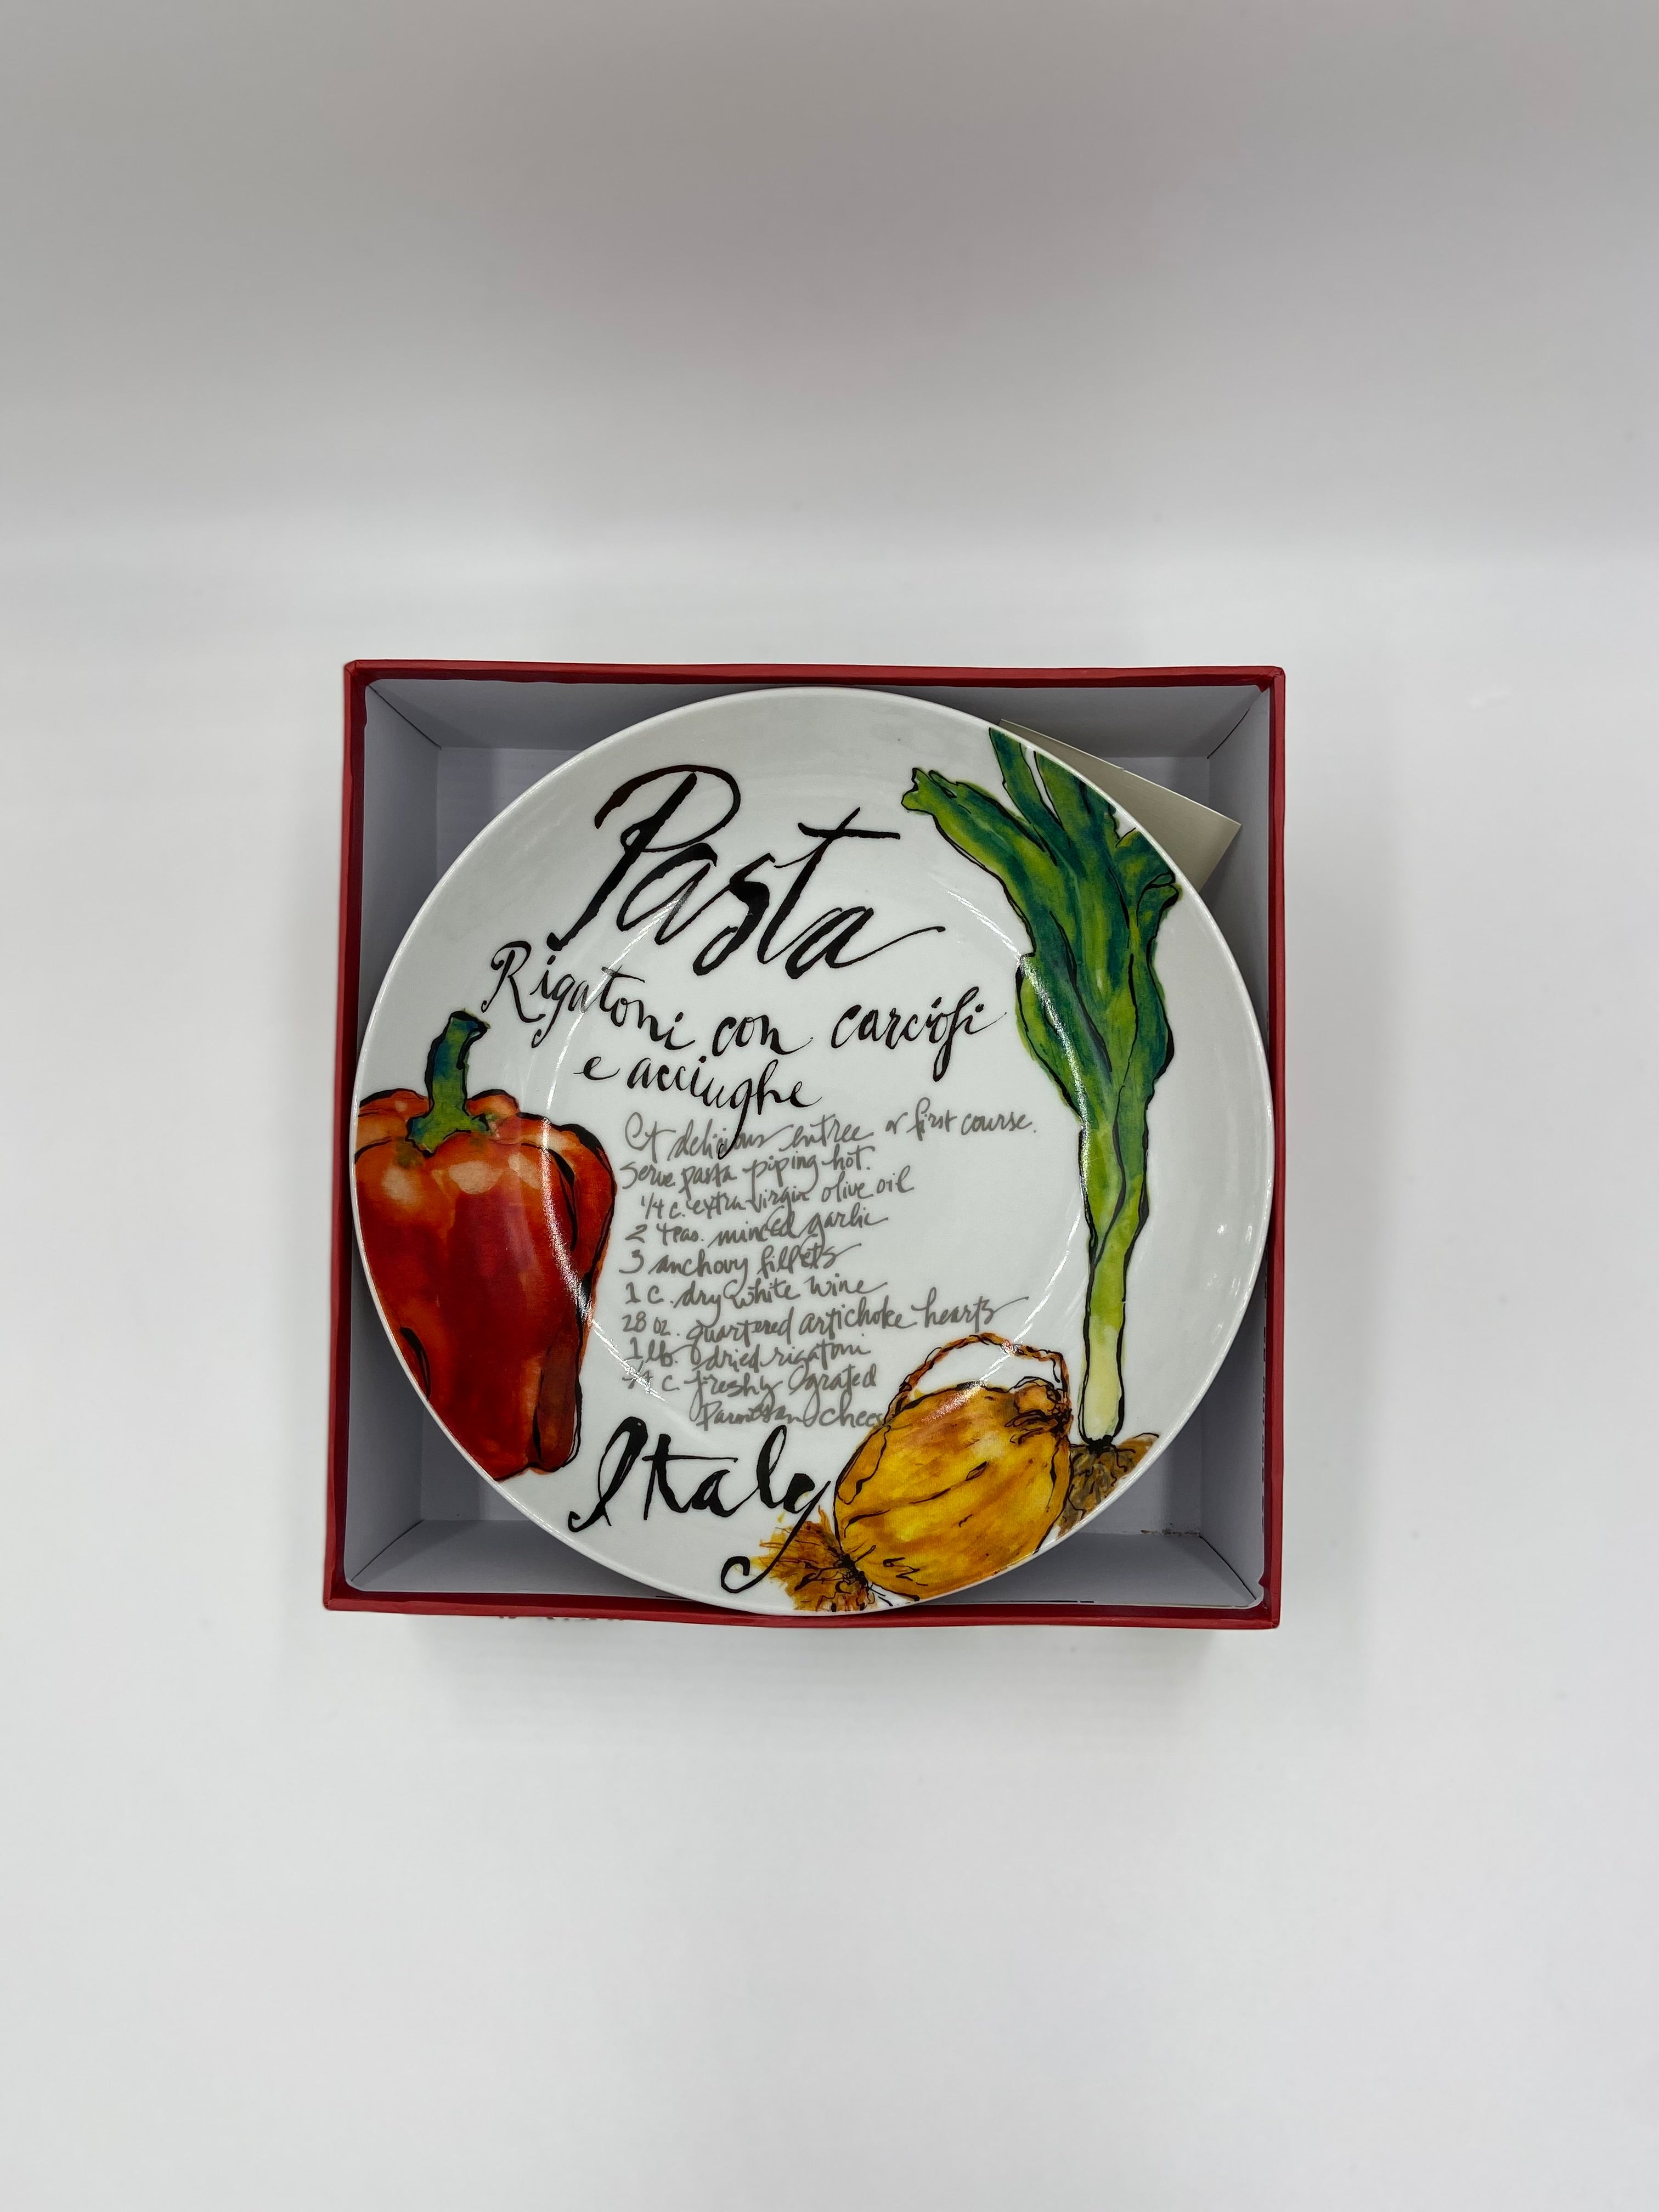 Set of 4 Pasta/Serving Bowls - Red Pasta Design (8.5 inch) - Olive Oil Etcetera